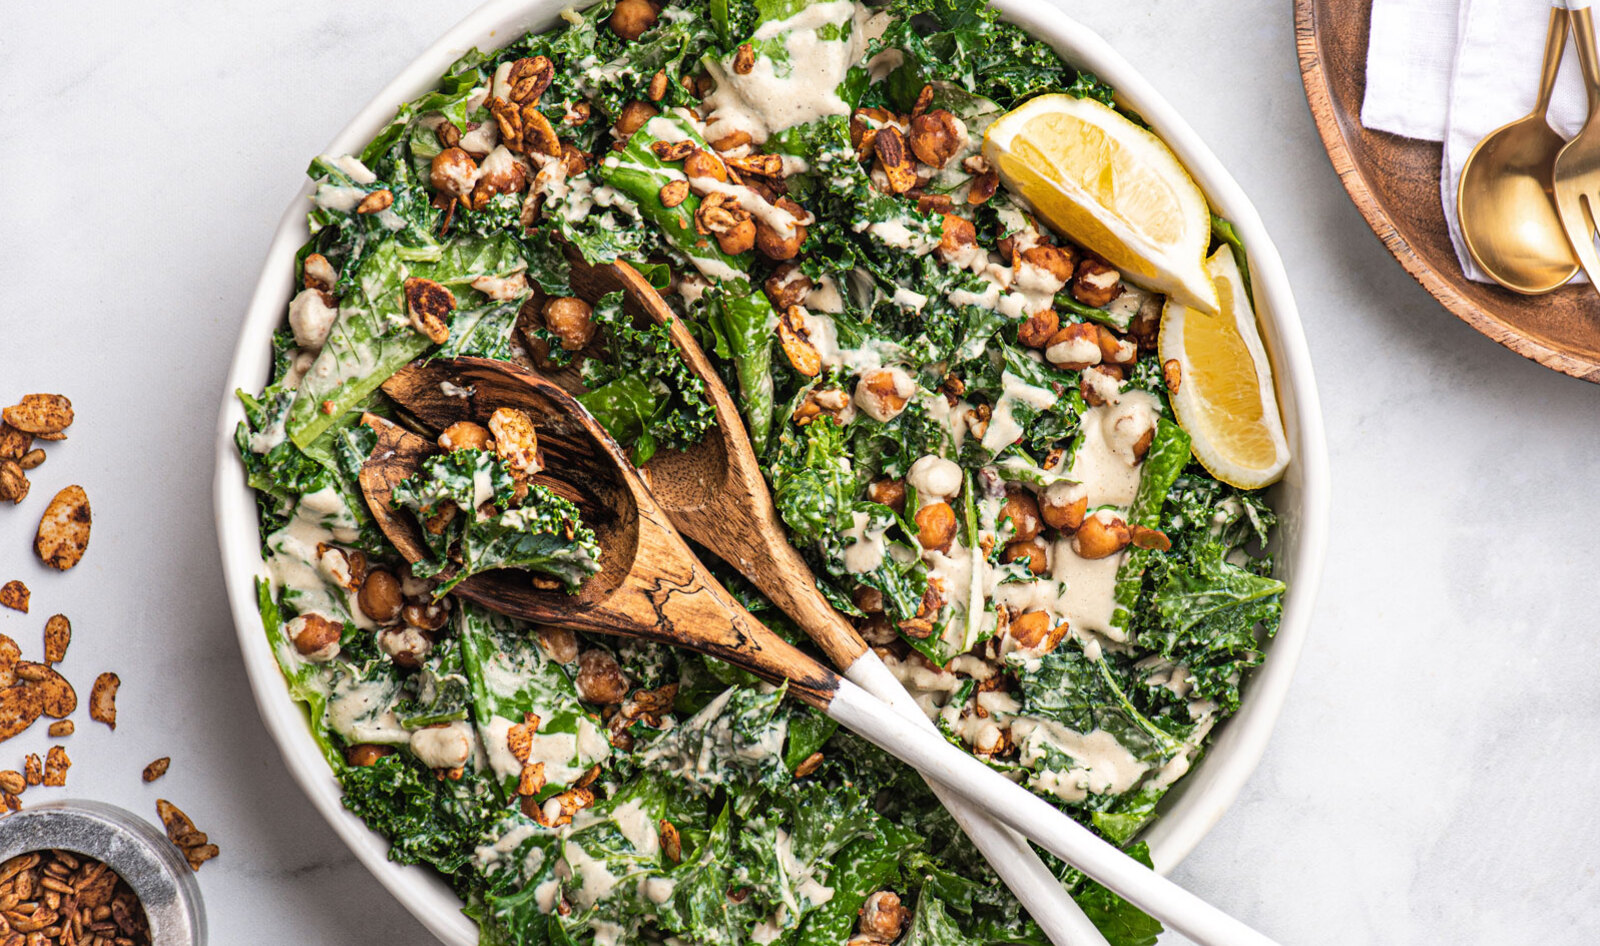 13 Ways to Prepare Kale: From Pasta to Pesto